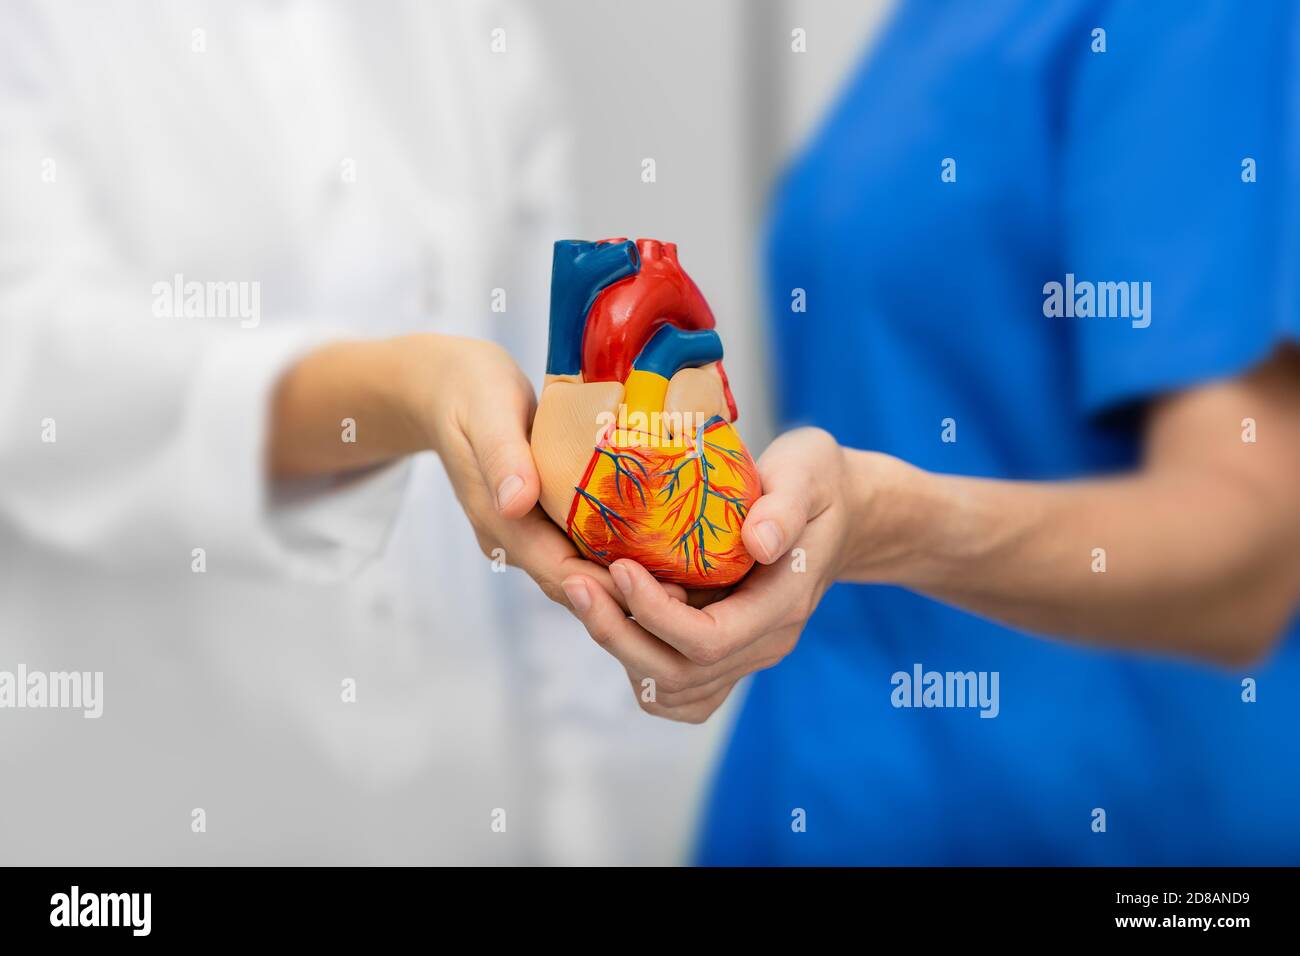 concetto medico assistenza sanitaria e supporto. medico e infermiere che tengono il cuore in mano, primo piano Foto Stock